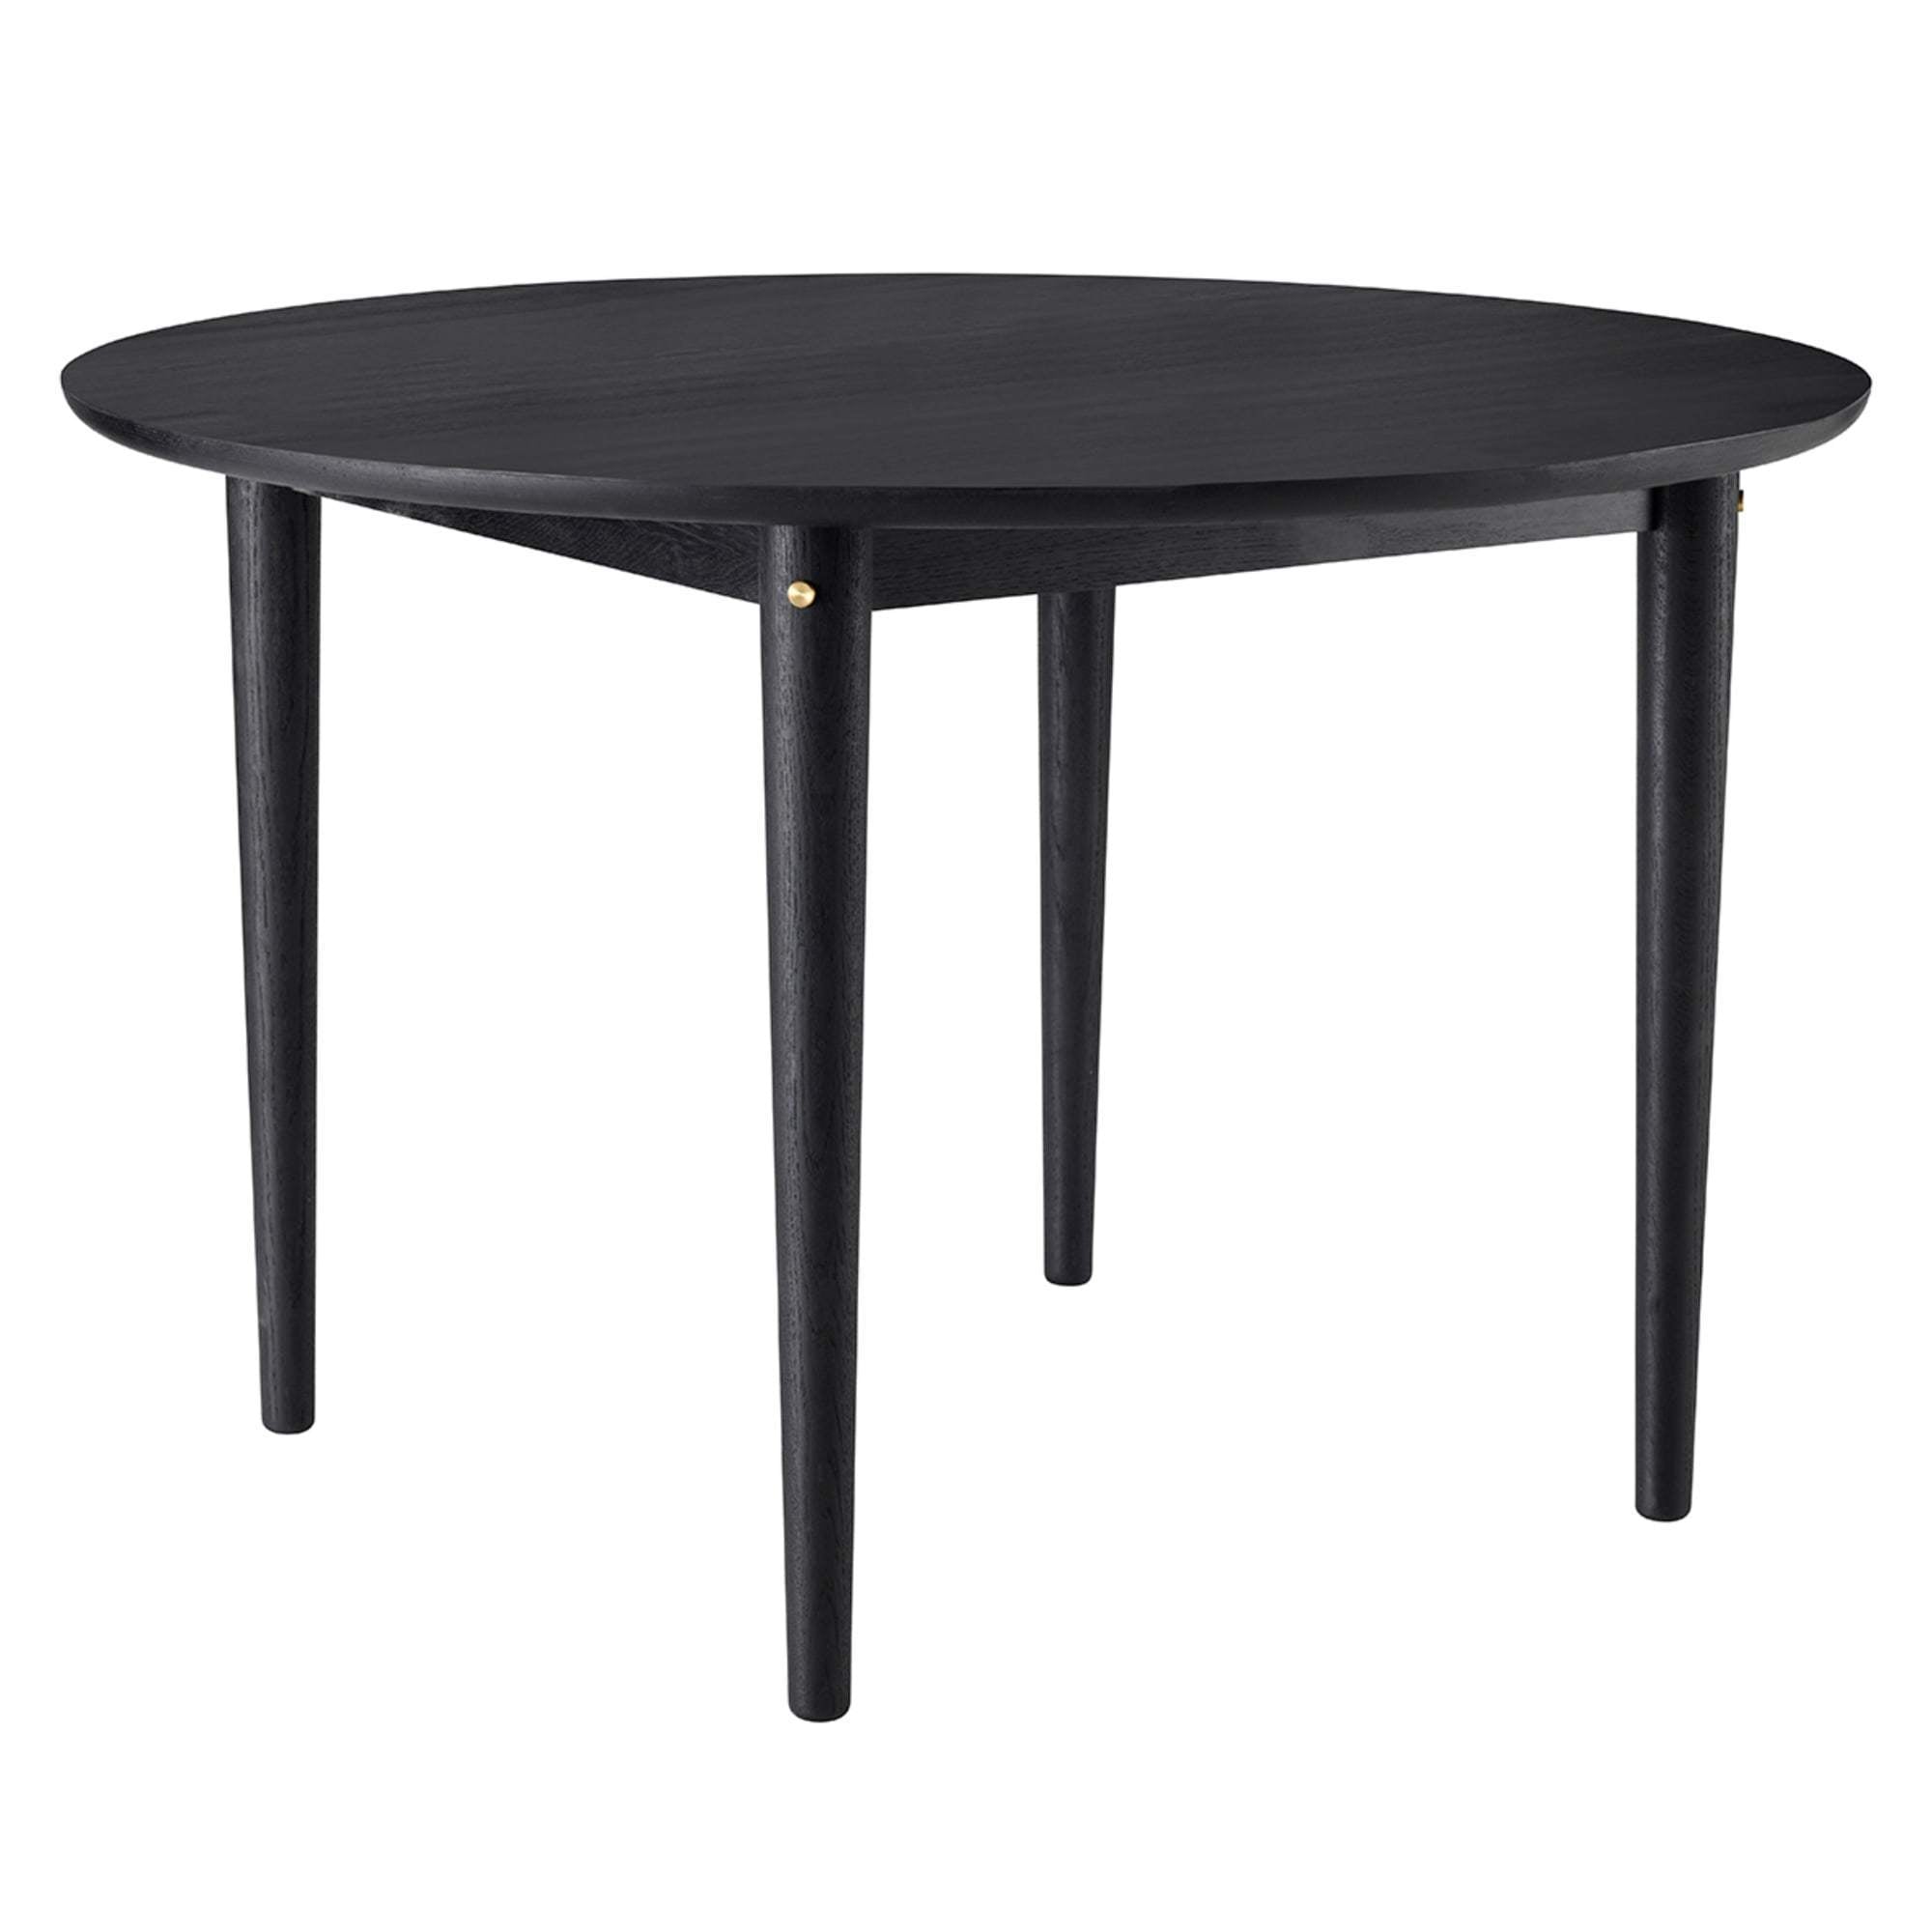 Fdb Møbler C62 matbord svart ek, 120 cm